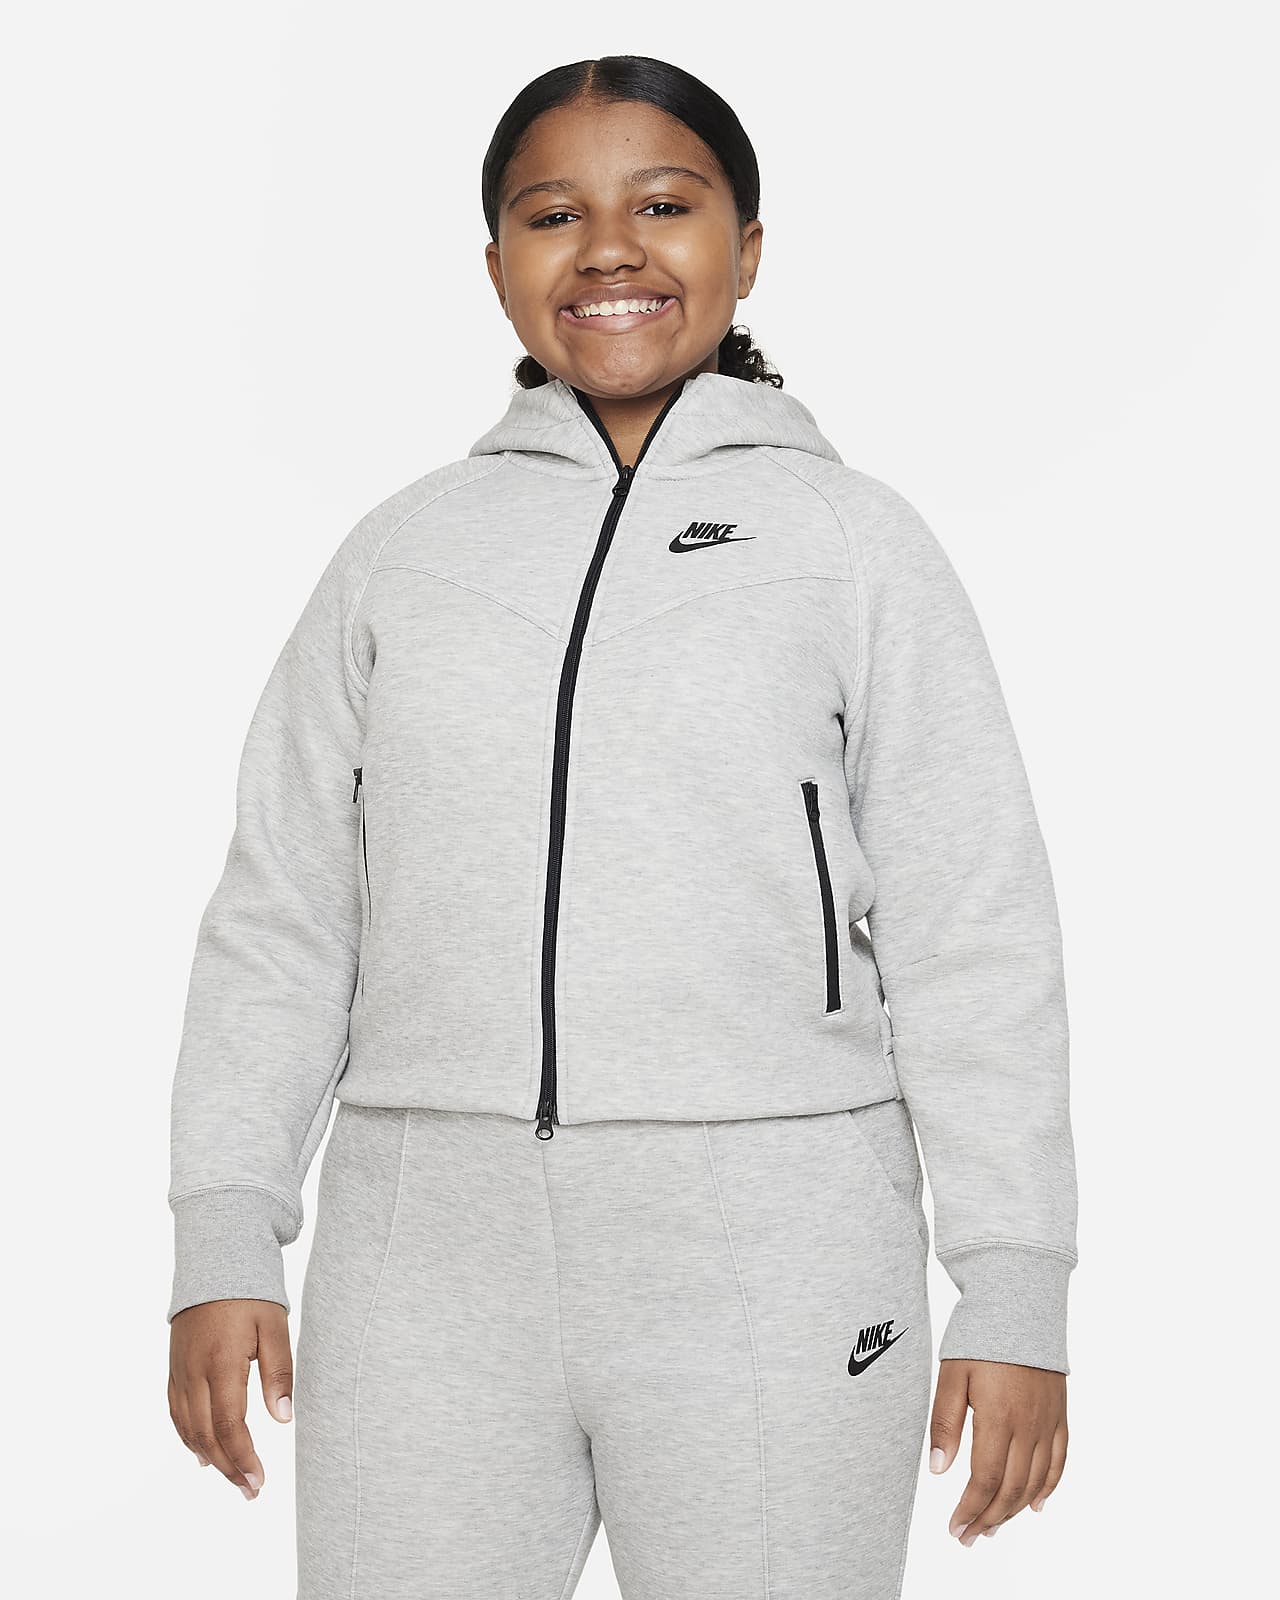 Μπλούζα με κουκούλα και φερμουάρ σε όλο το μήκος Nike Sportswear Tech Fleece για μεγάλα κορίτσια (μεγαλύτερο μέγεθος)